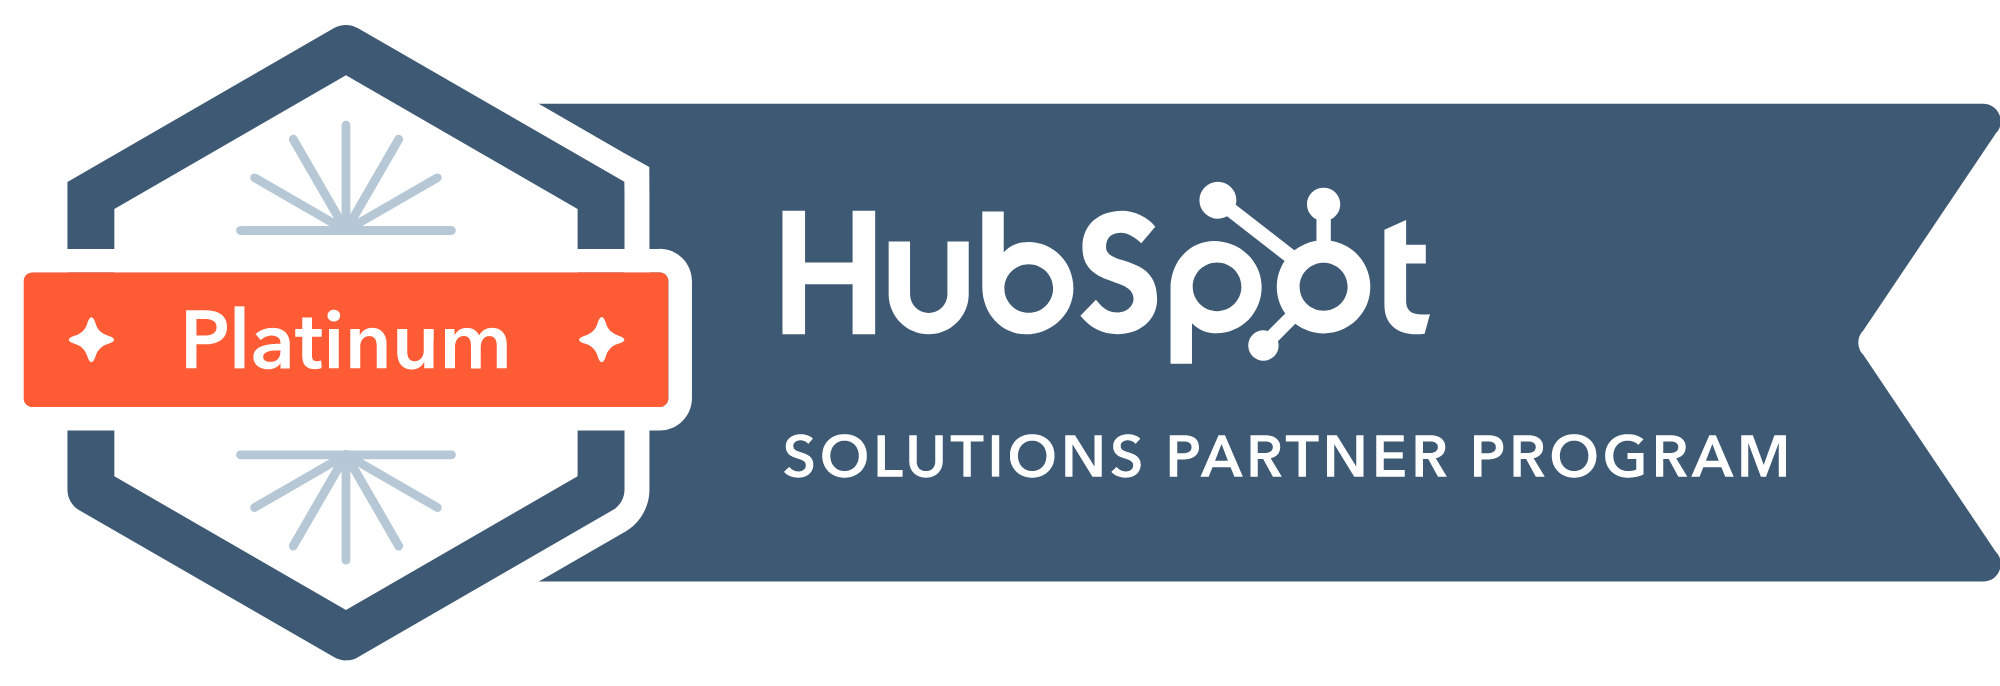 Iteo Hubspot Solution Partner Program